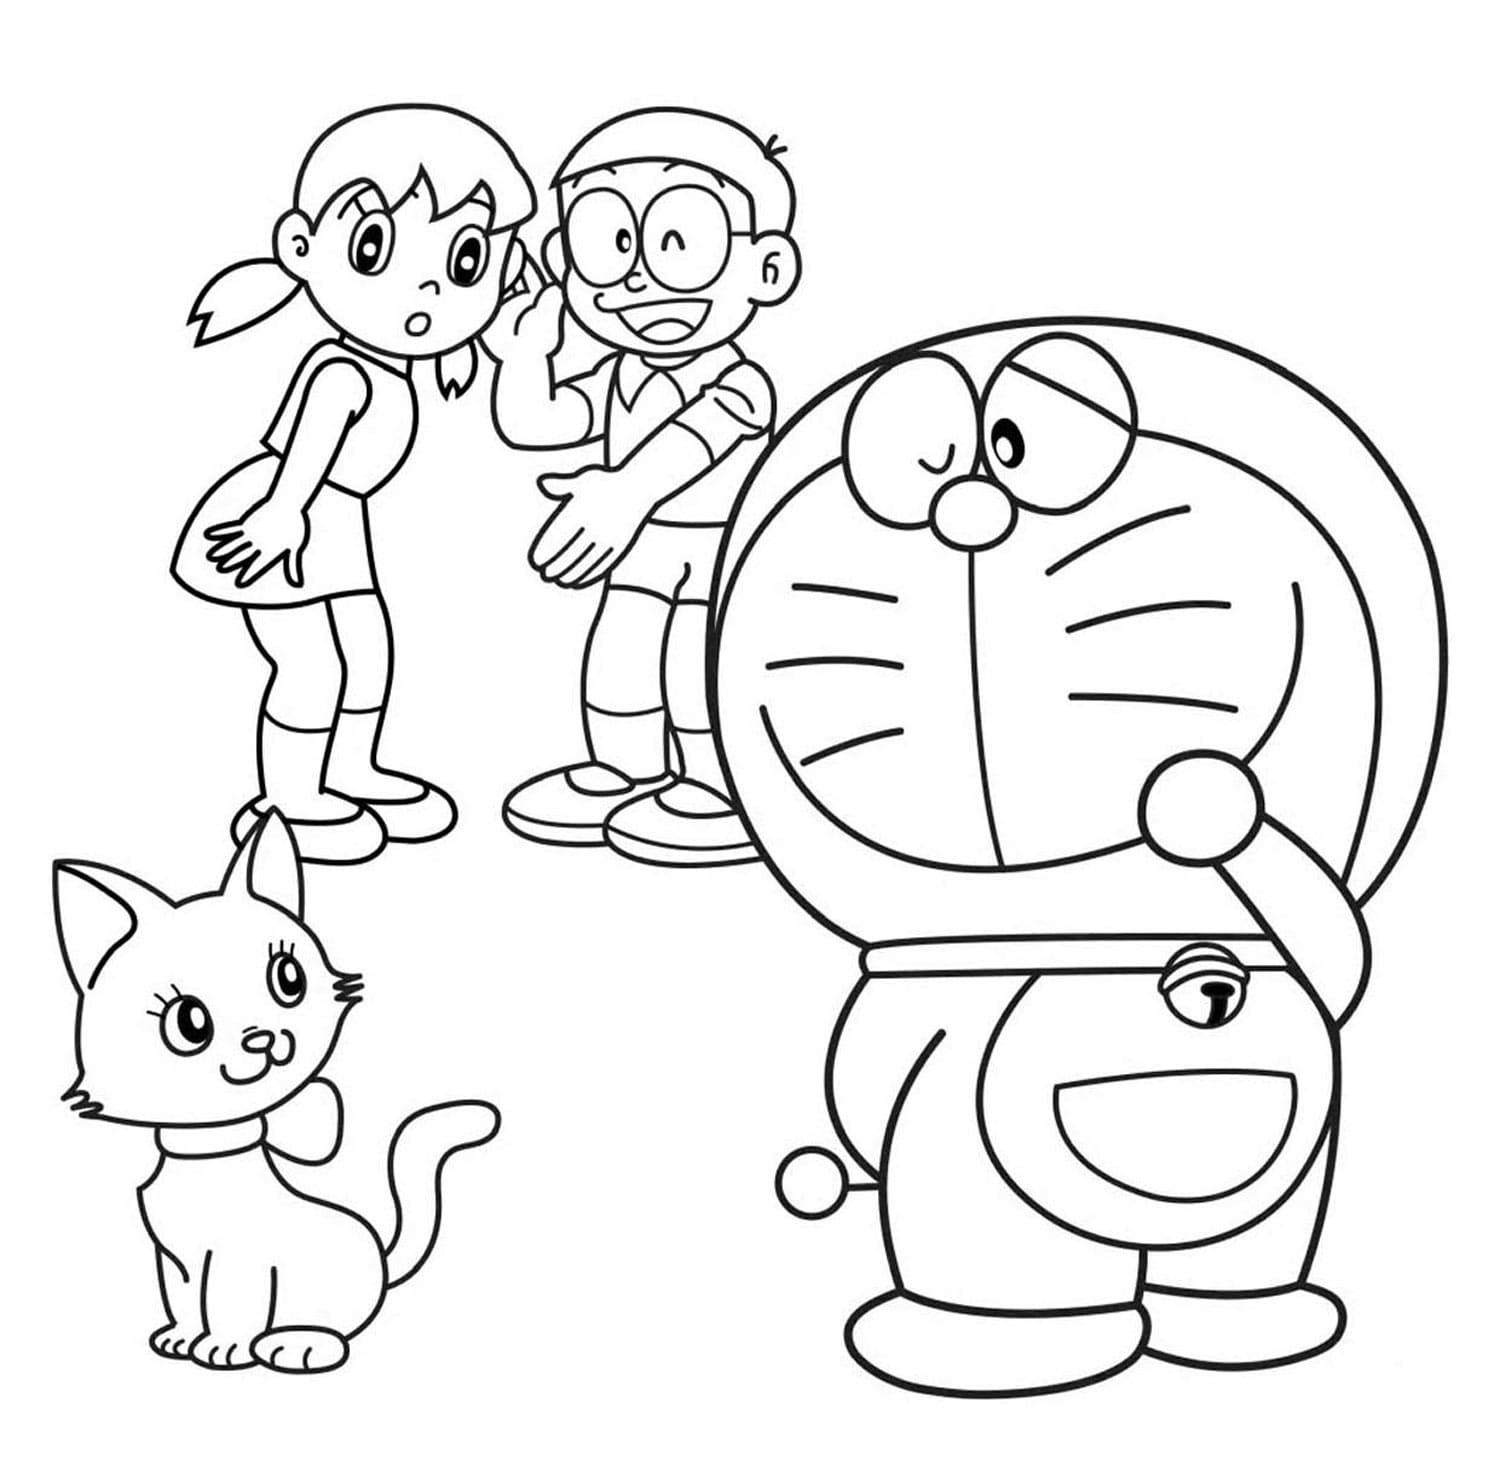 Doraemon Coloring Pages